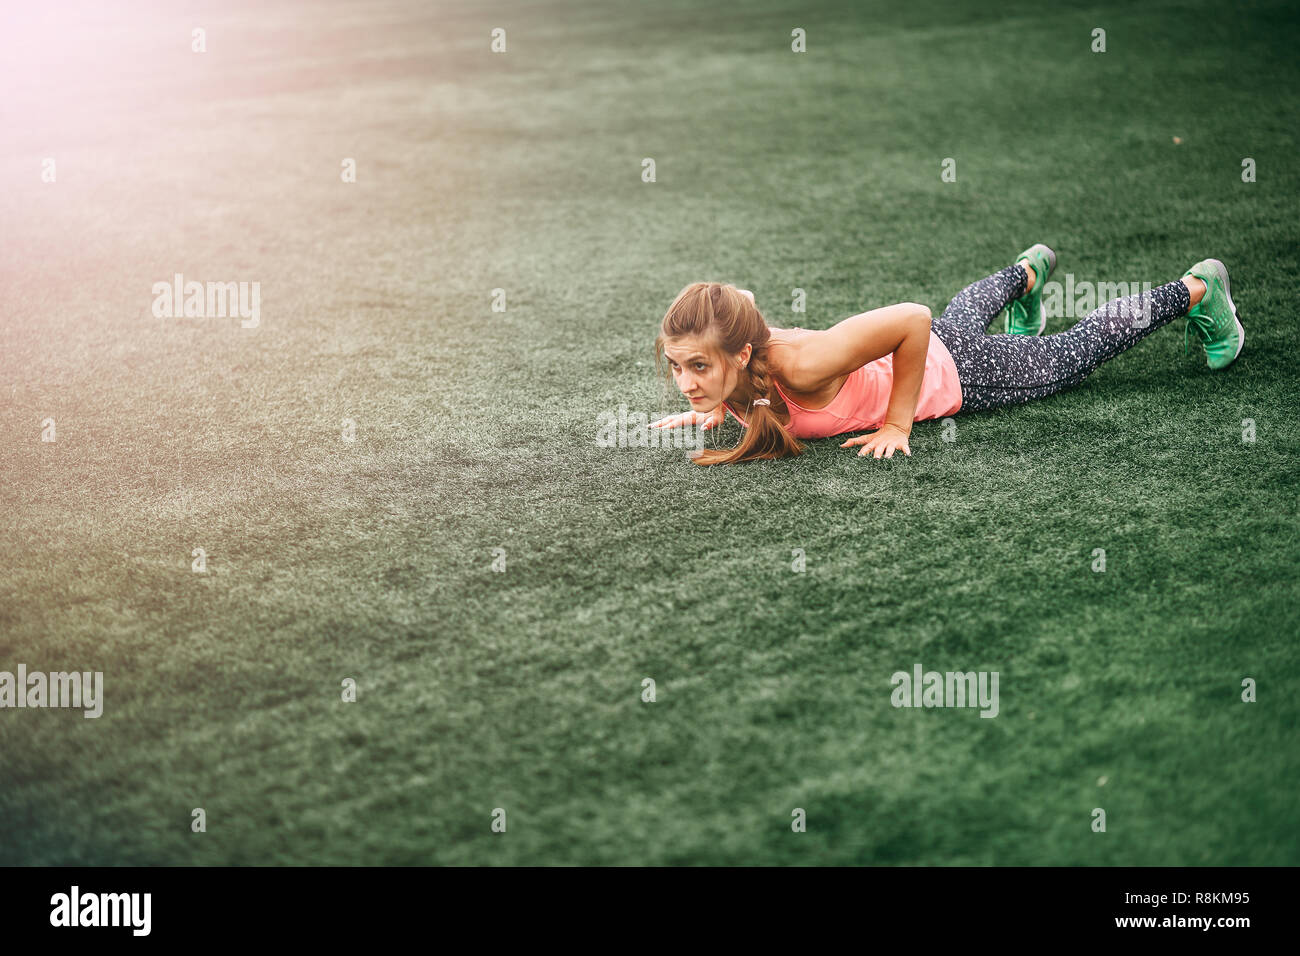 Passende Frau in hellen Sport Kleidung burpees auf dem grünen Rasen zu tun Stockfoto